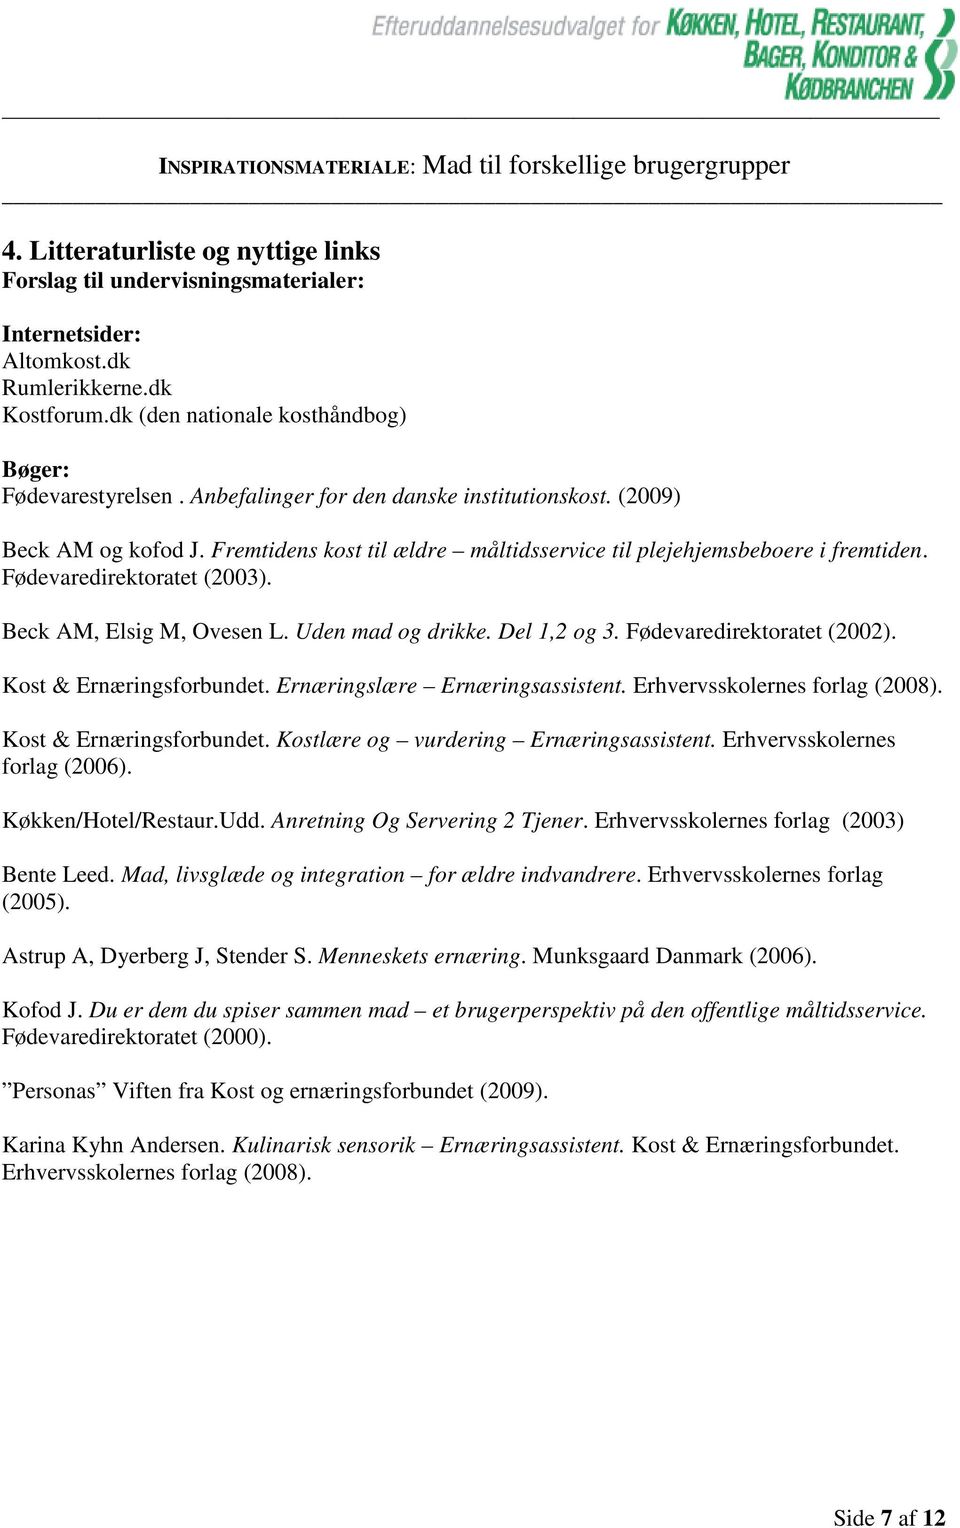 Beck AM, Elsig M, Ovesen L. Uden mad og drikke. Del 1,2 og 3. Fødevaredirektoratet (2002). Kost & Ernæringsforbundet. Ernæringslære Ernæringsassistent. Erhvervsskolernes forlag (2008).